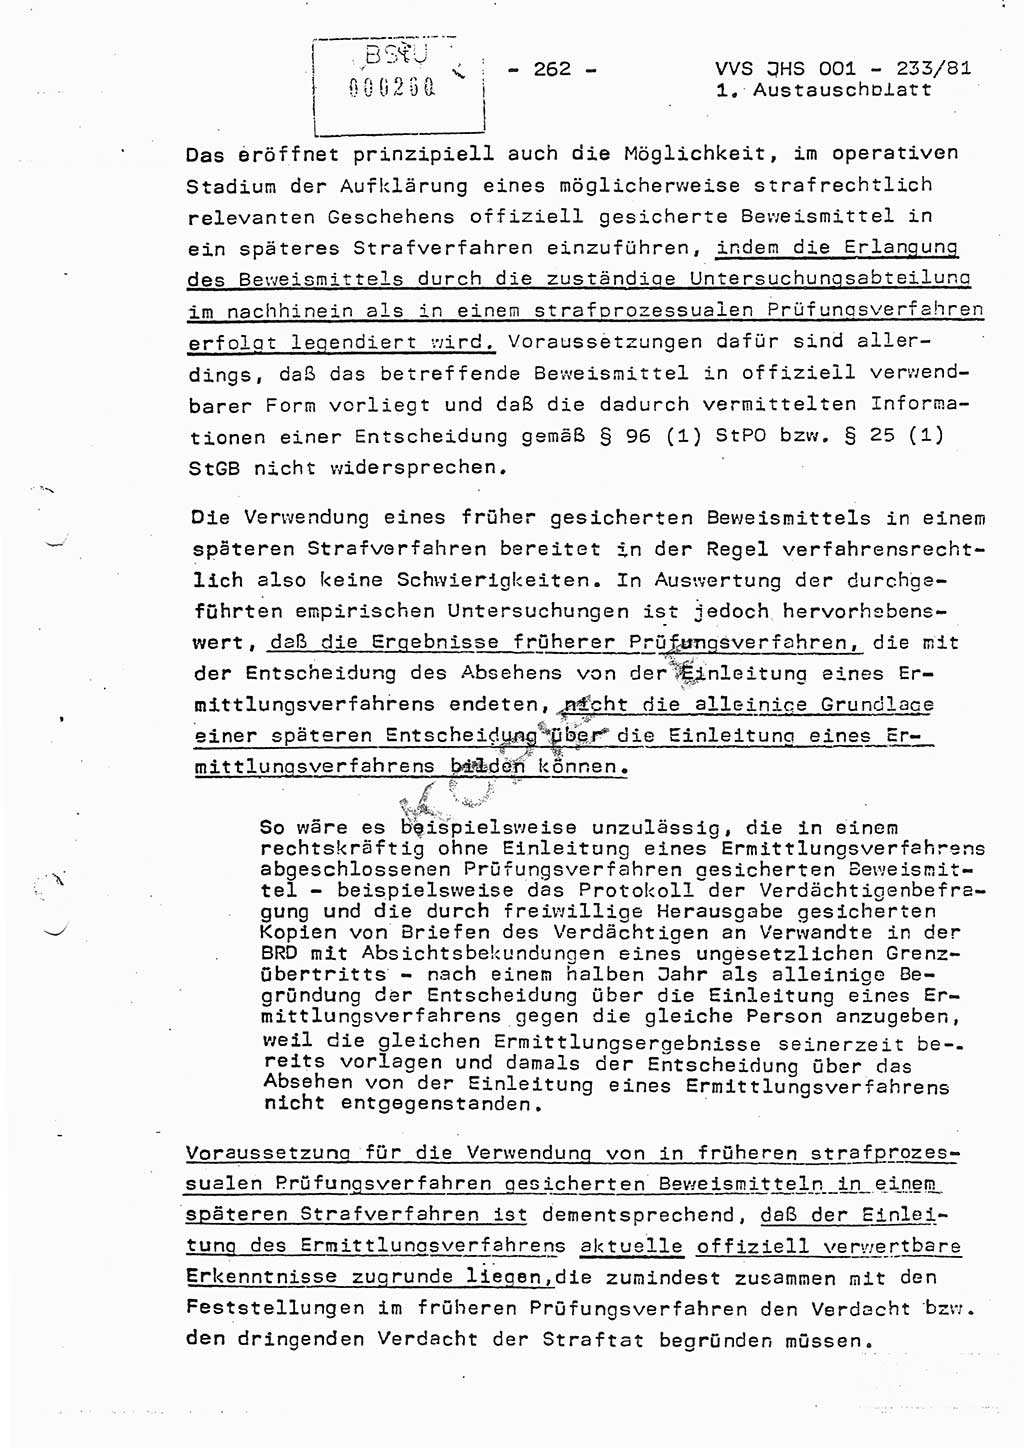 Dissertation Oberstleutnant Horst Zank (JHS), Oberstleutnant Dr. Karl-Heinz Knoblauch (JHS), Oberstleutnant Gustav-Adolf Kowalewski (HA Ⅸ), Oberstleutnant Wolfgang Plötner (HA Ⅸ), Ministerium für Staatssicherheit (MfS) [Deutsche Demokratische Republik (DDR)], Juristische Hochschule (JHS), Vertrauliche Verschlußsache (VVS) o001-233/81, Potsdam 1981, Blatt 262 (Diss. MfS DDR JHS VVS o001-233/81 1981, Bl. 262)